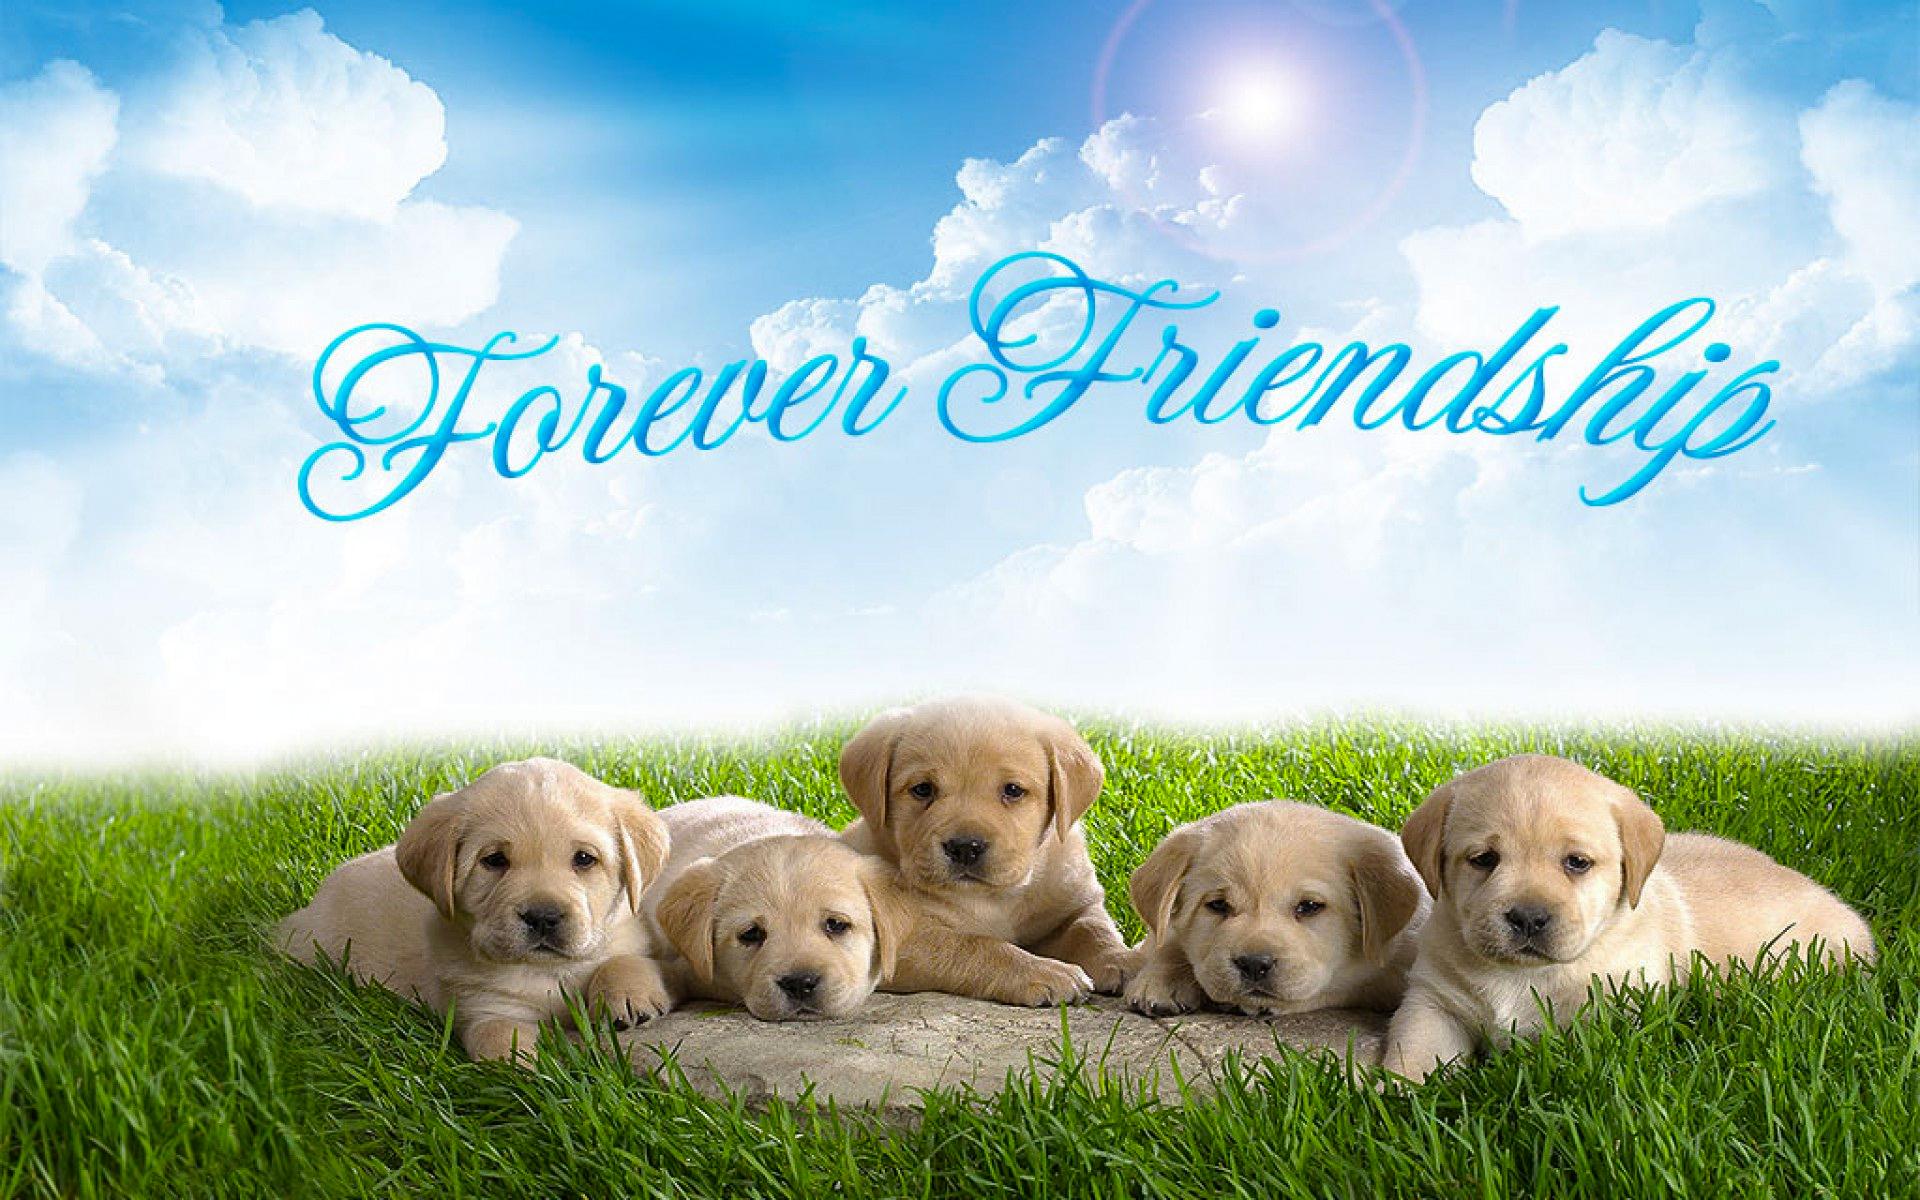 sfondi giorno dell'amicizia,cane,cucciolo,natura,golden retriever,erba